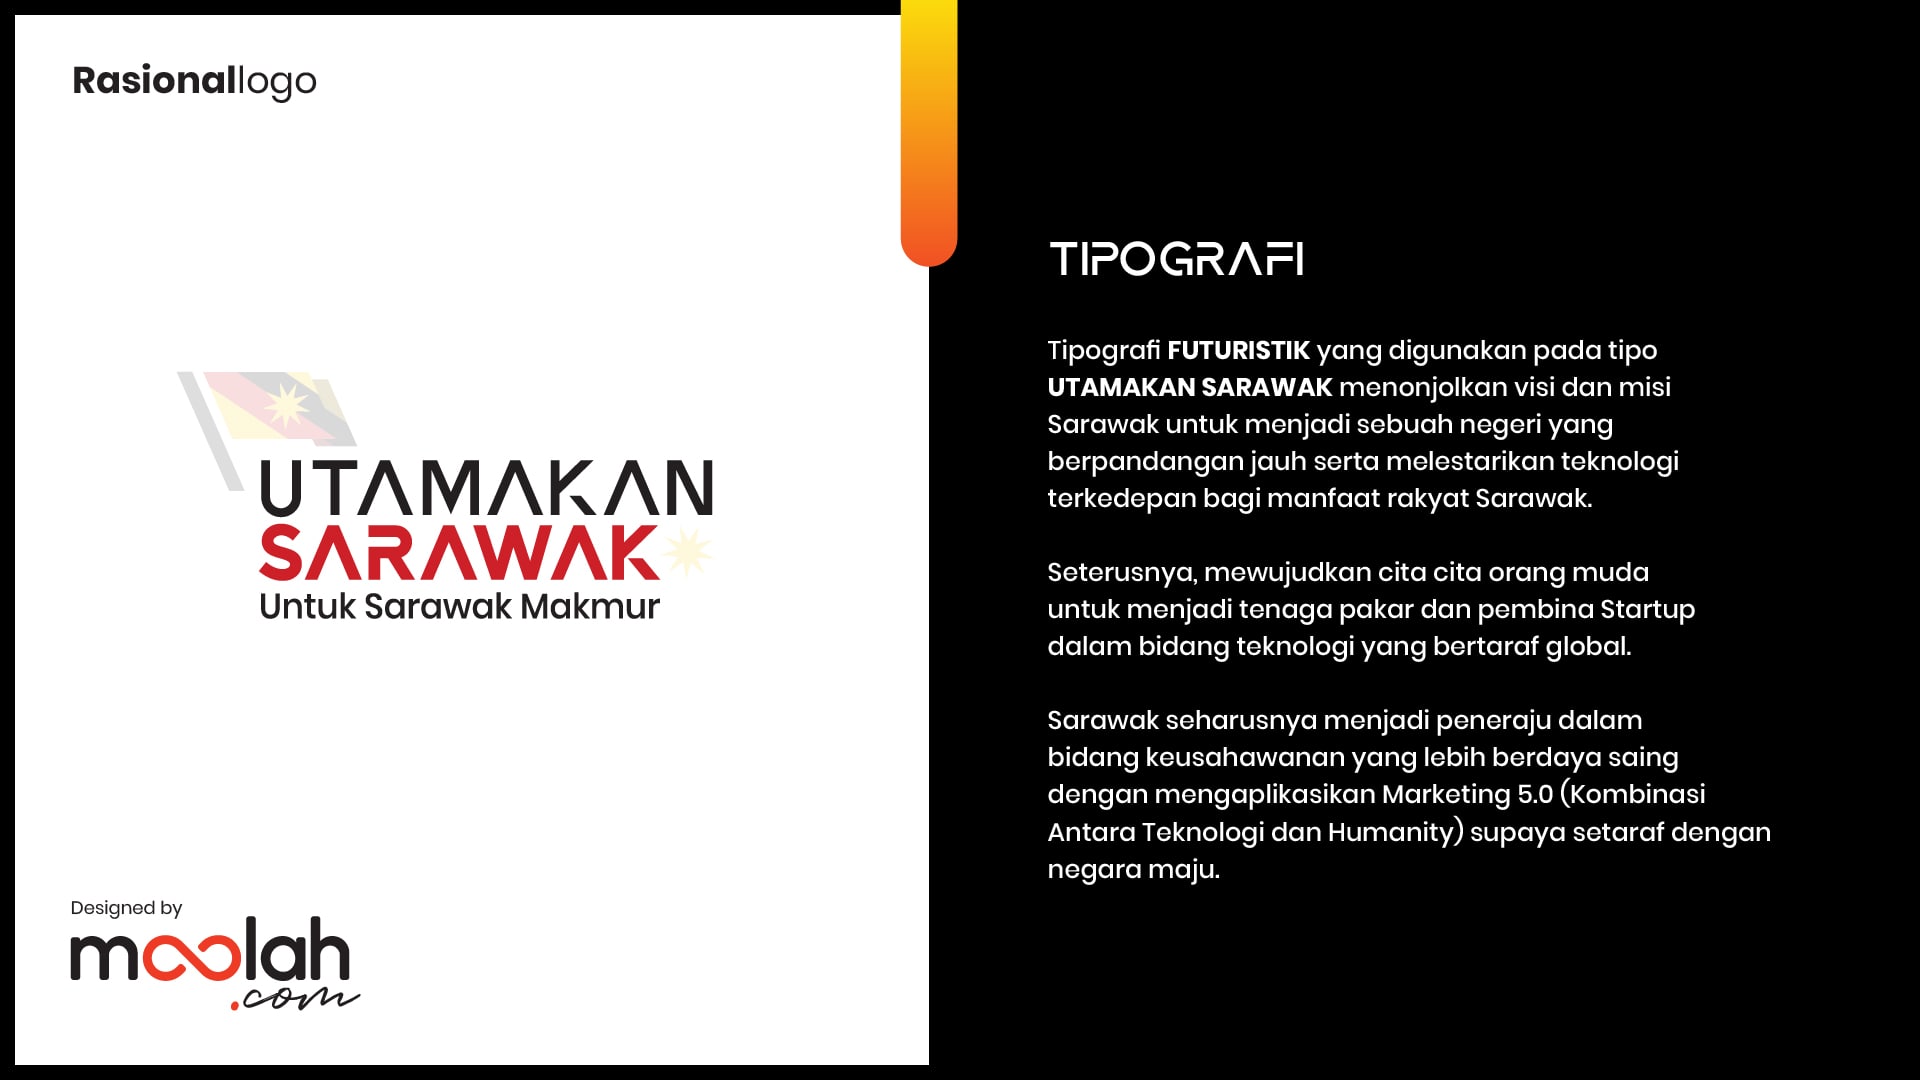 Utamakan Sarawak Logo Campaign 02 min Moolah Design